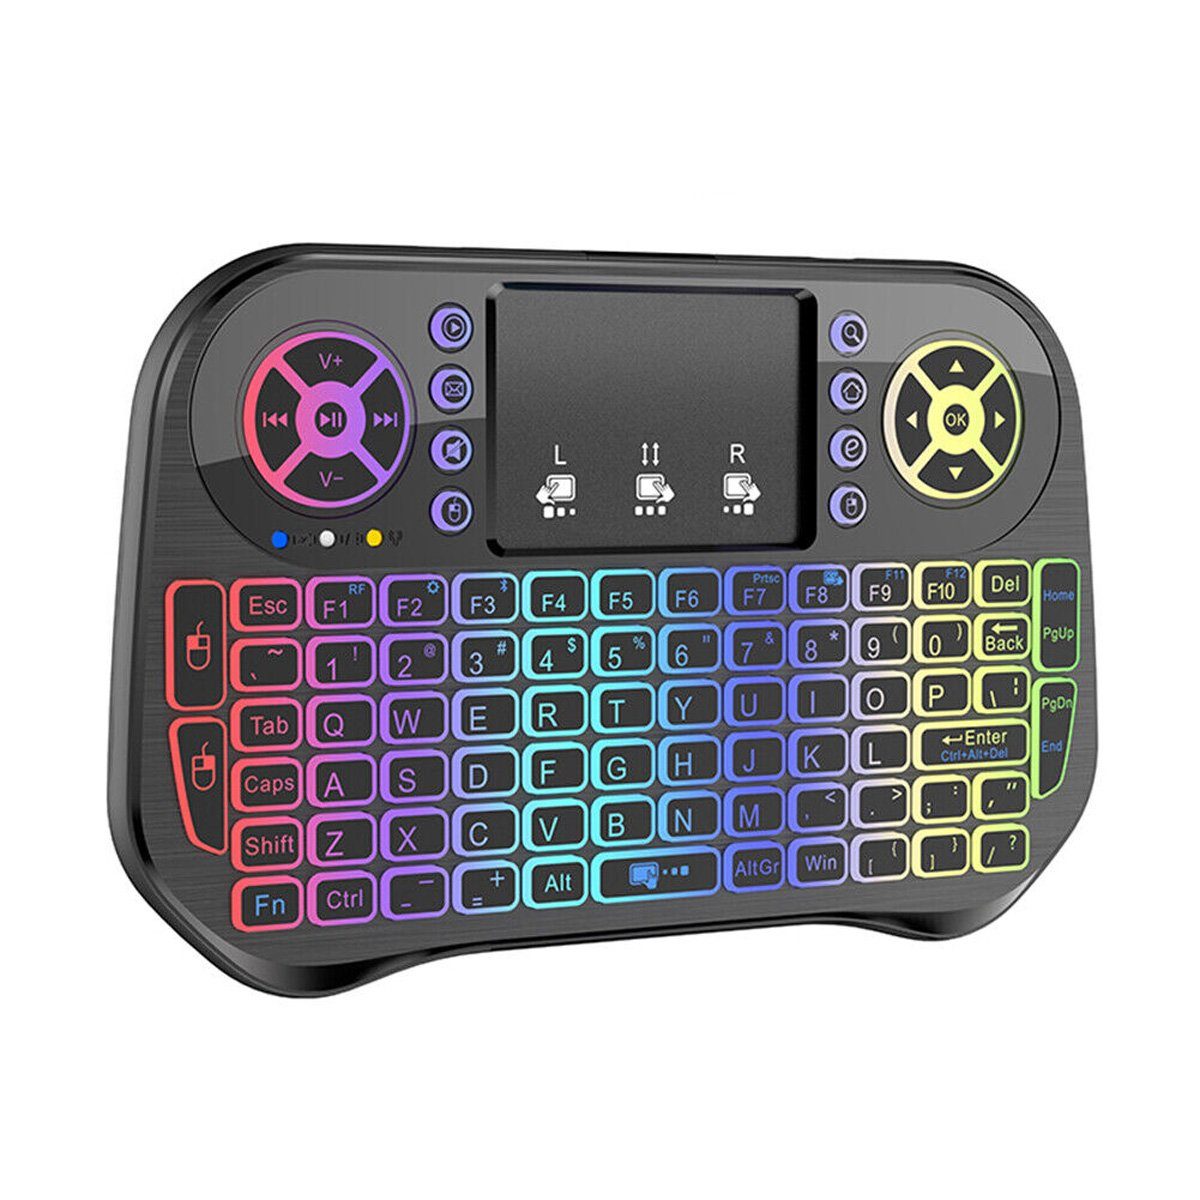 yozhiqu 2.4G Tastatur, Bluetooth-kompatible Tastatur mit Touchpad Wireless-Tastatur